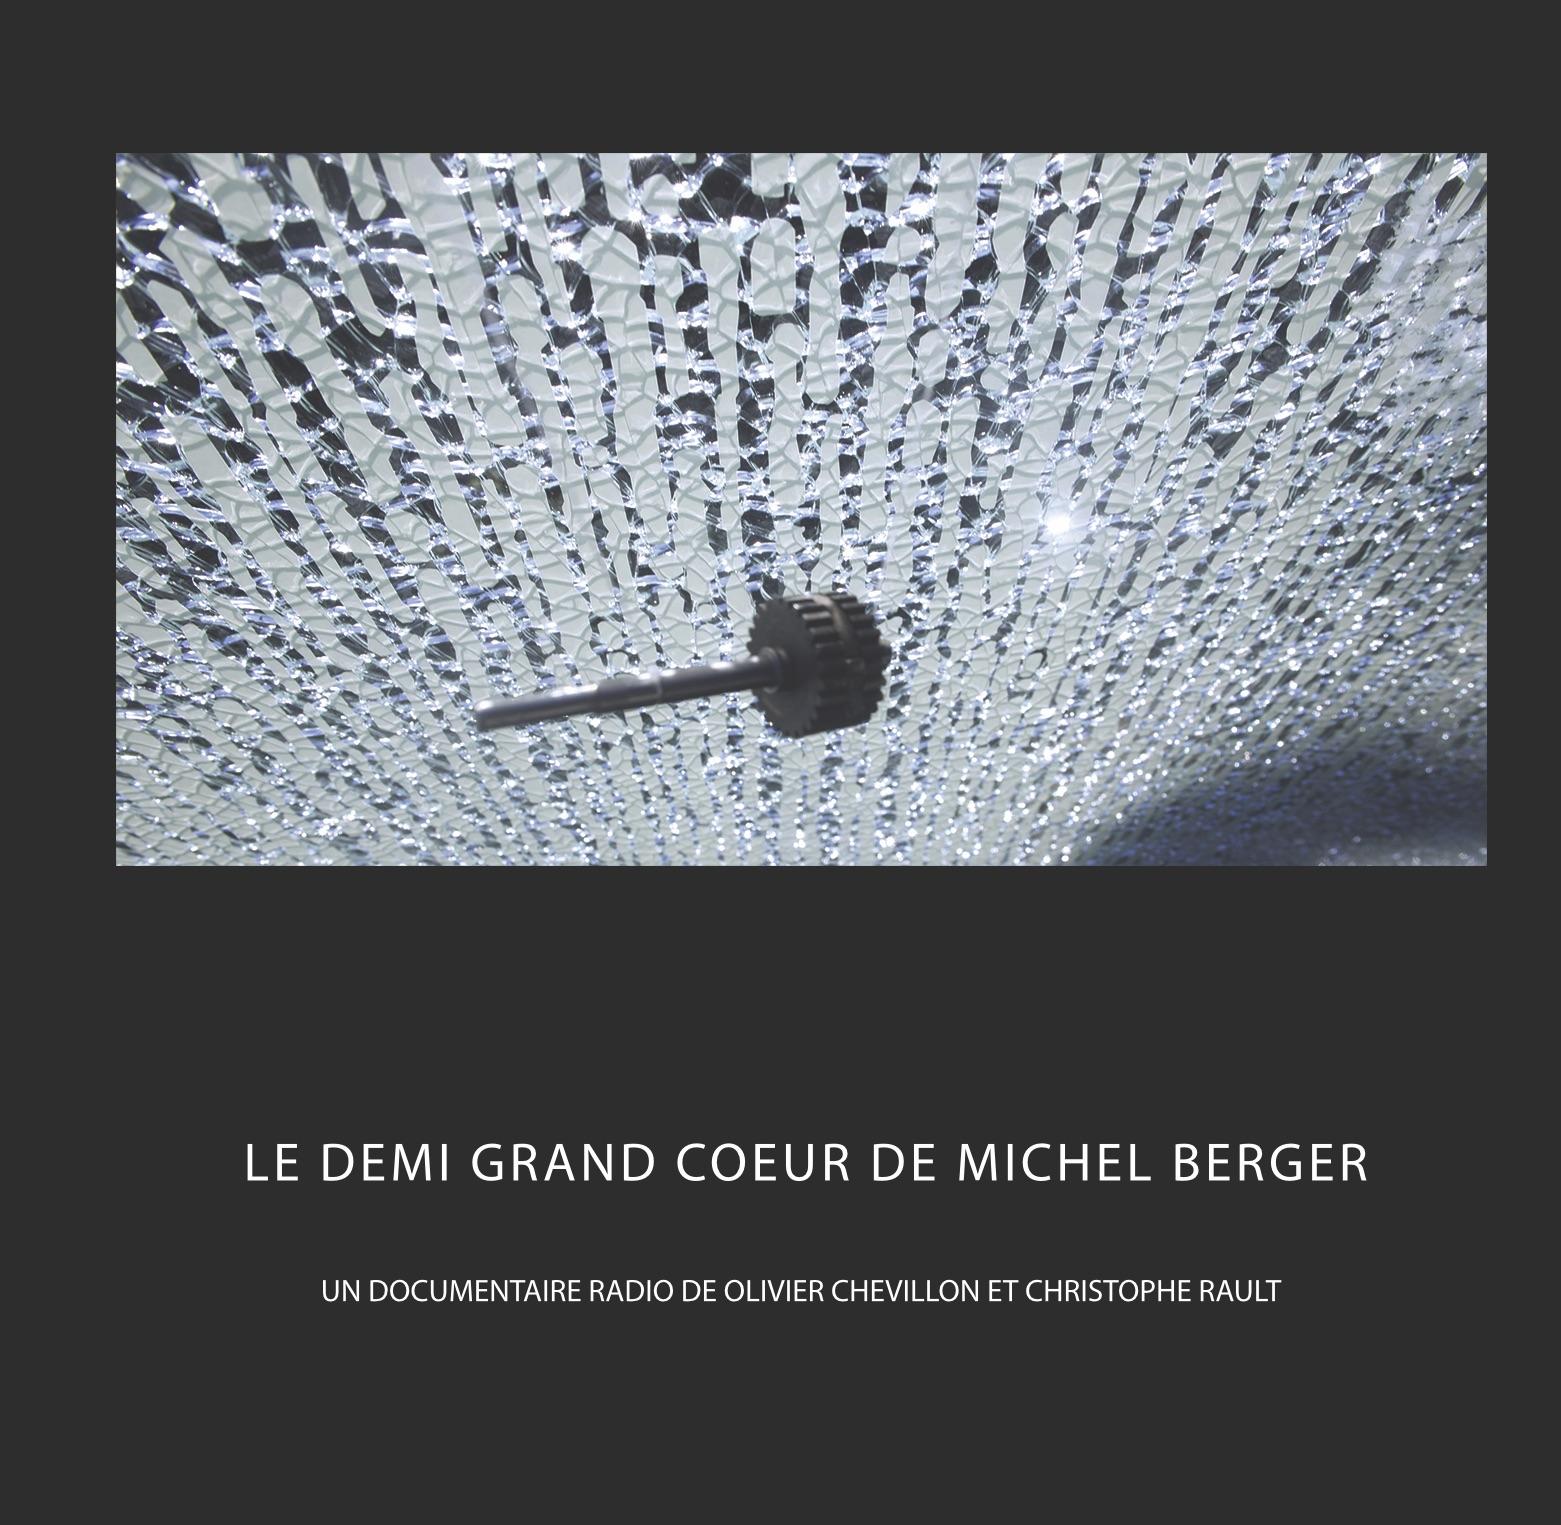 Michel Berger, l'étoile au coeur brisé